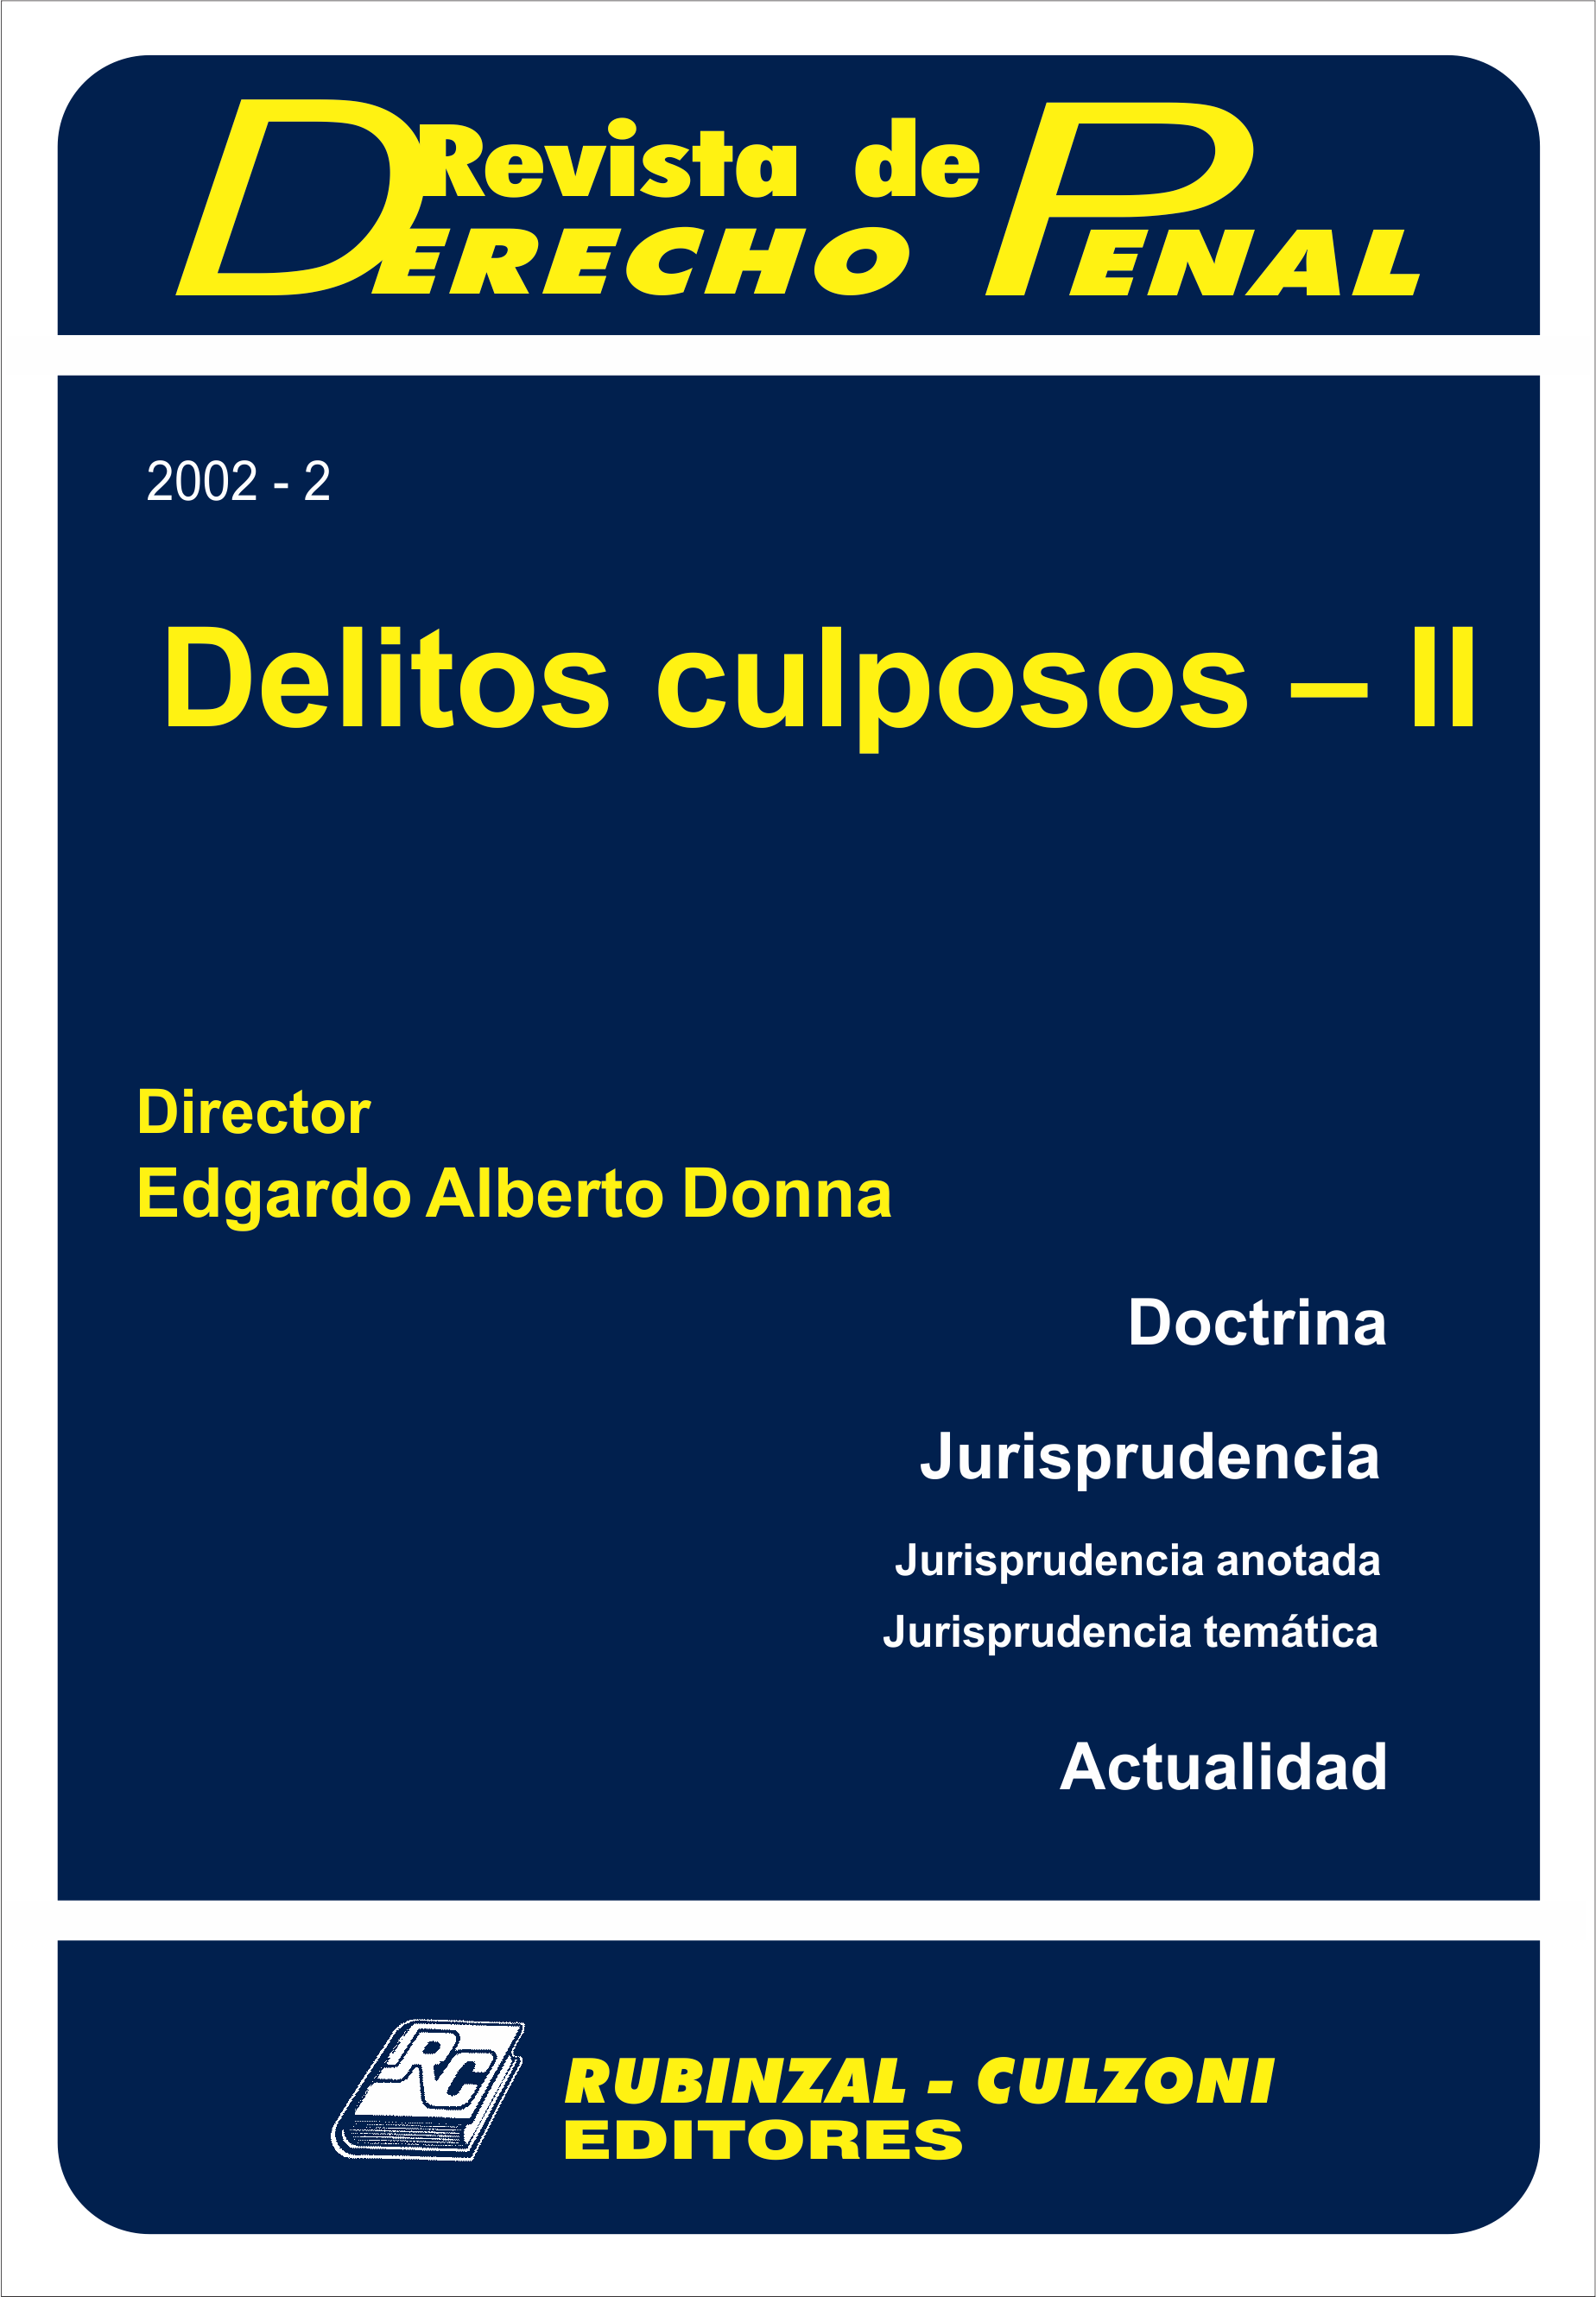 Revista de Derecho Penal - Delitos culposos - II.